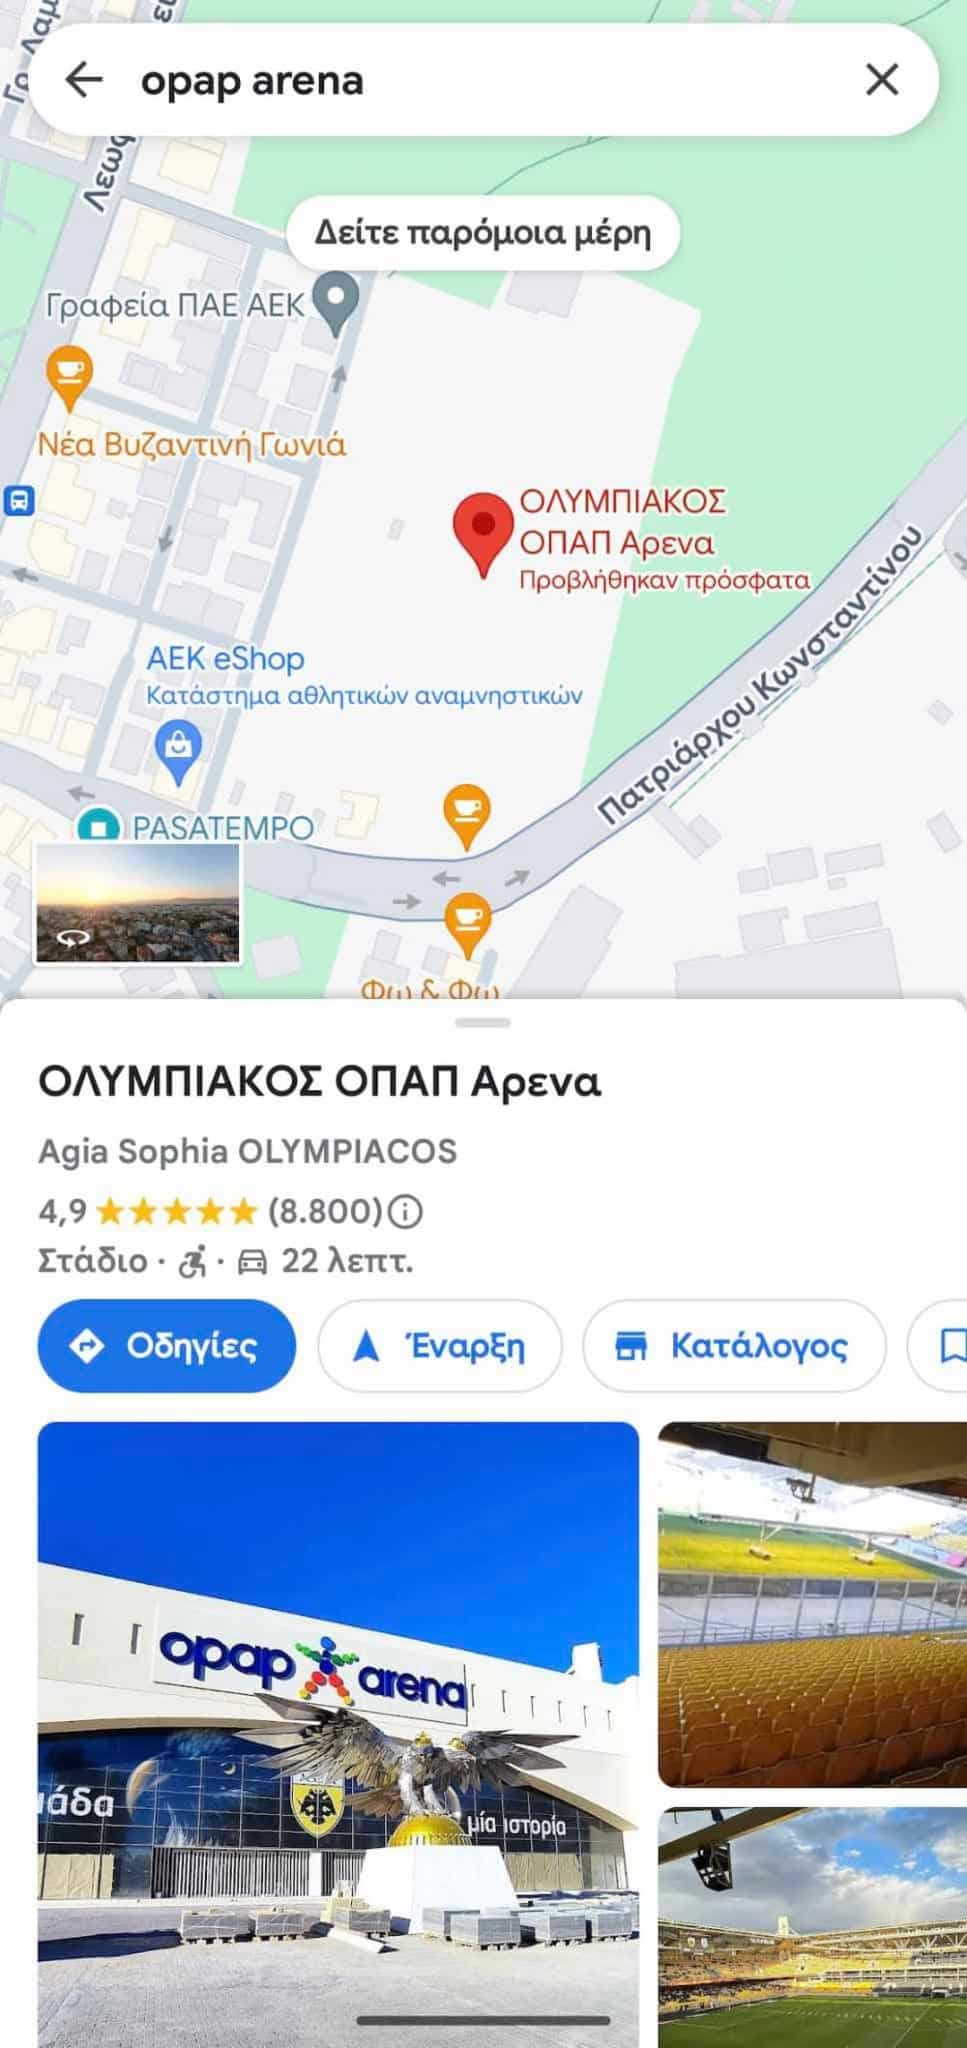 Η «OPAP Arena» έγινε… Ολυμπιακός Arena - H «αλλαγή» στο Googlemaps (εικόνα)